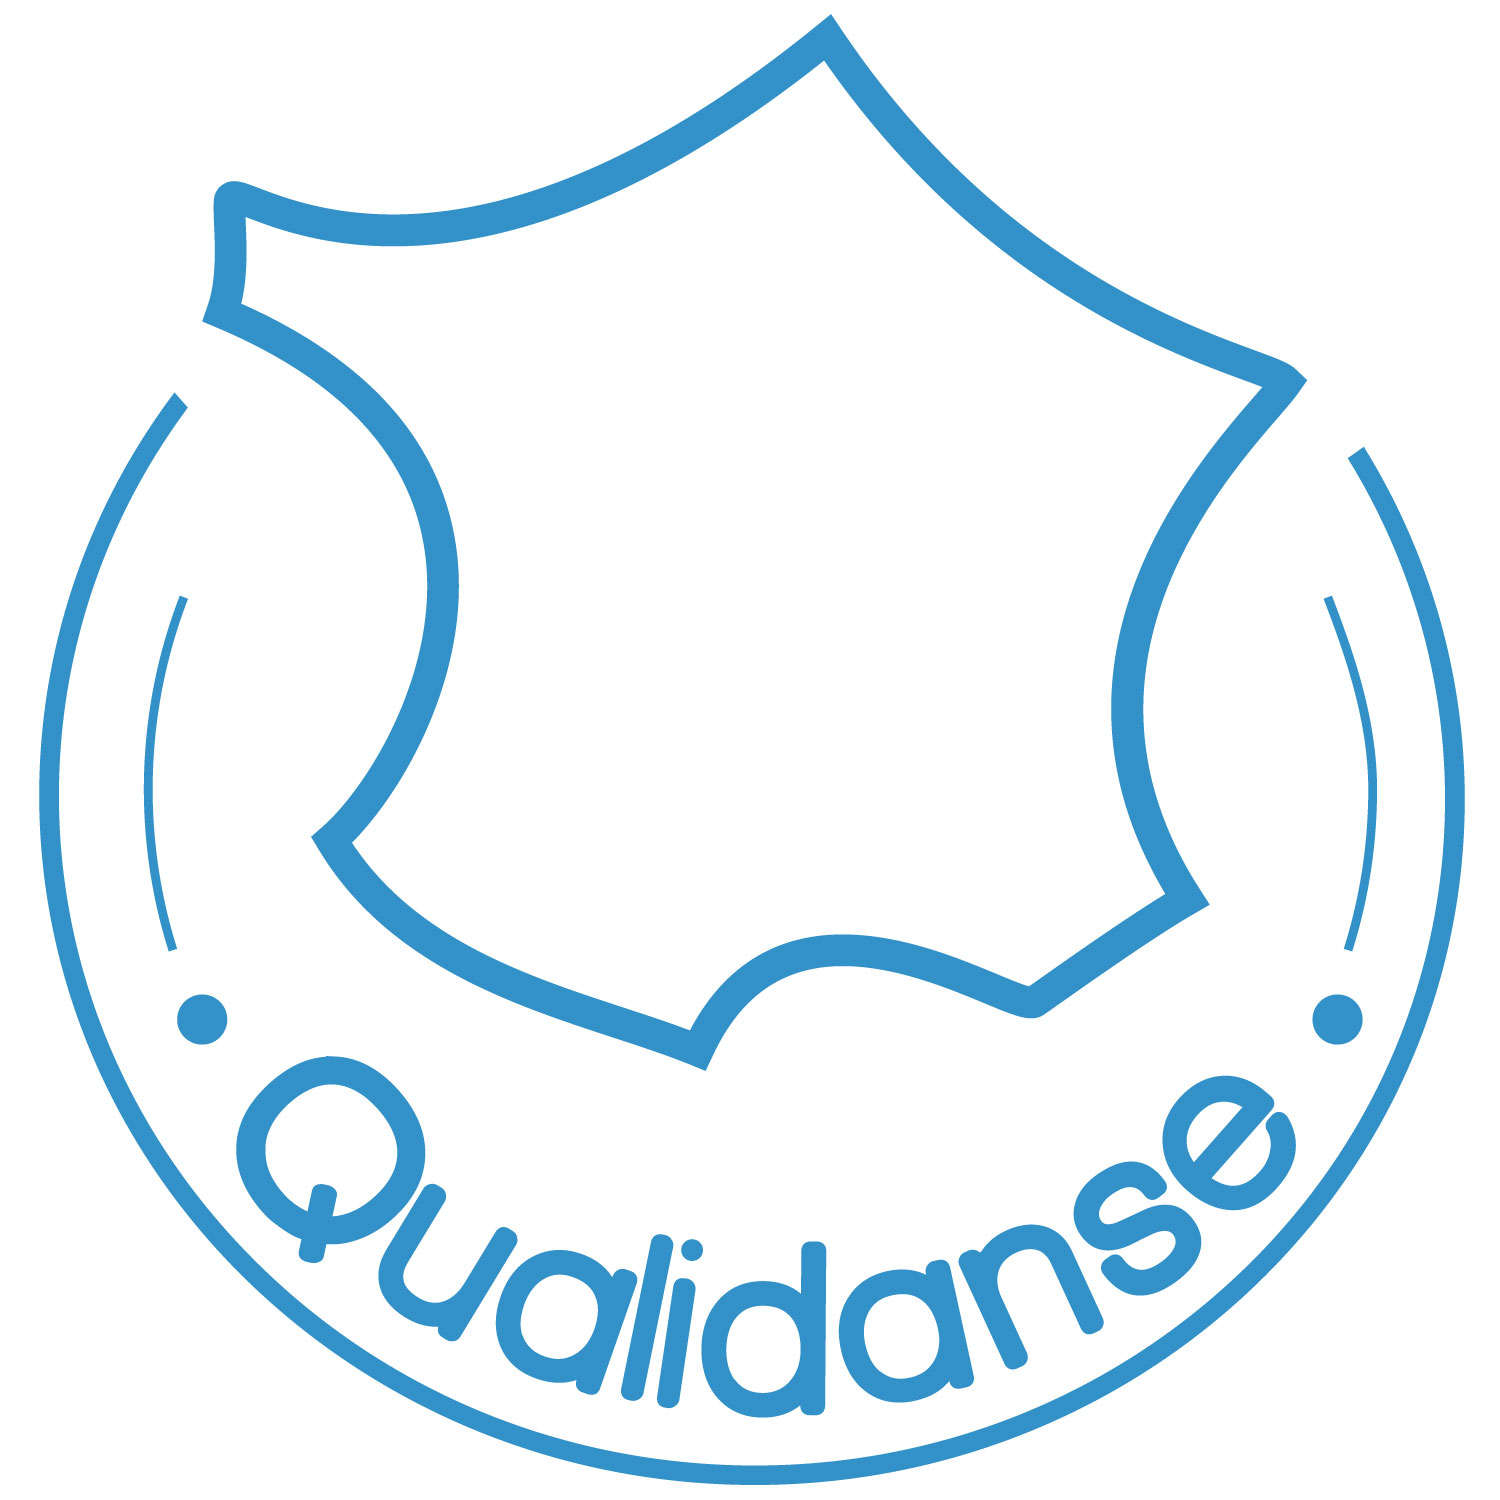 Qualidanse-label-quadri.jpg